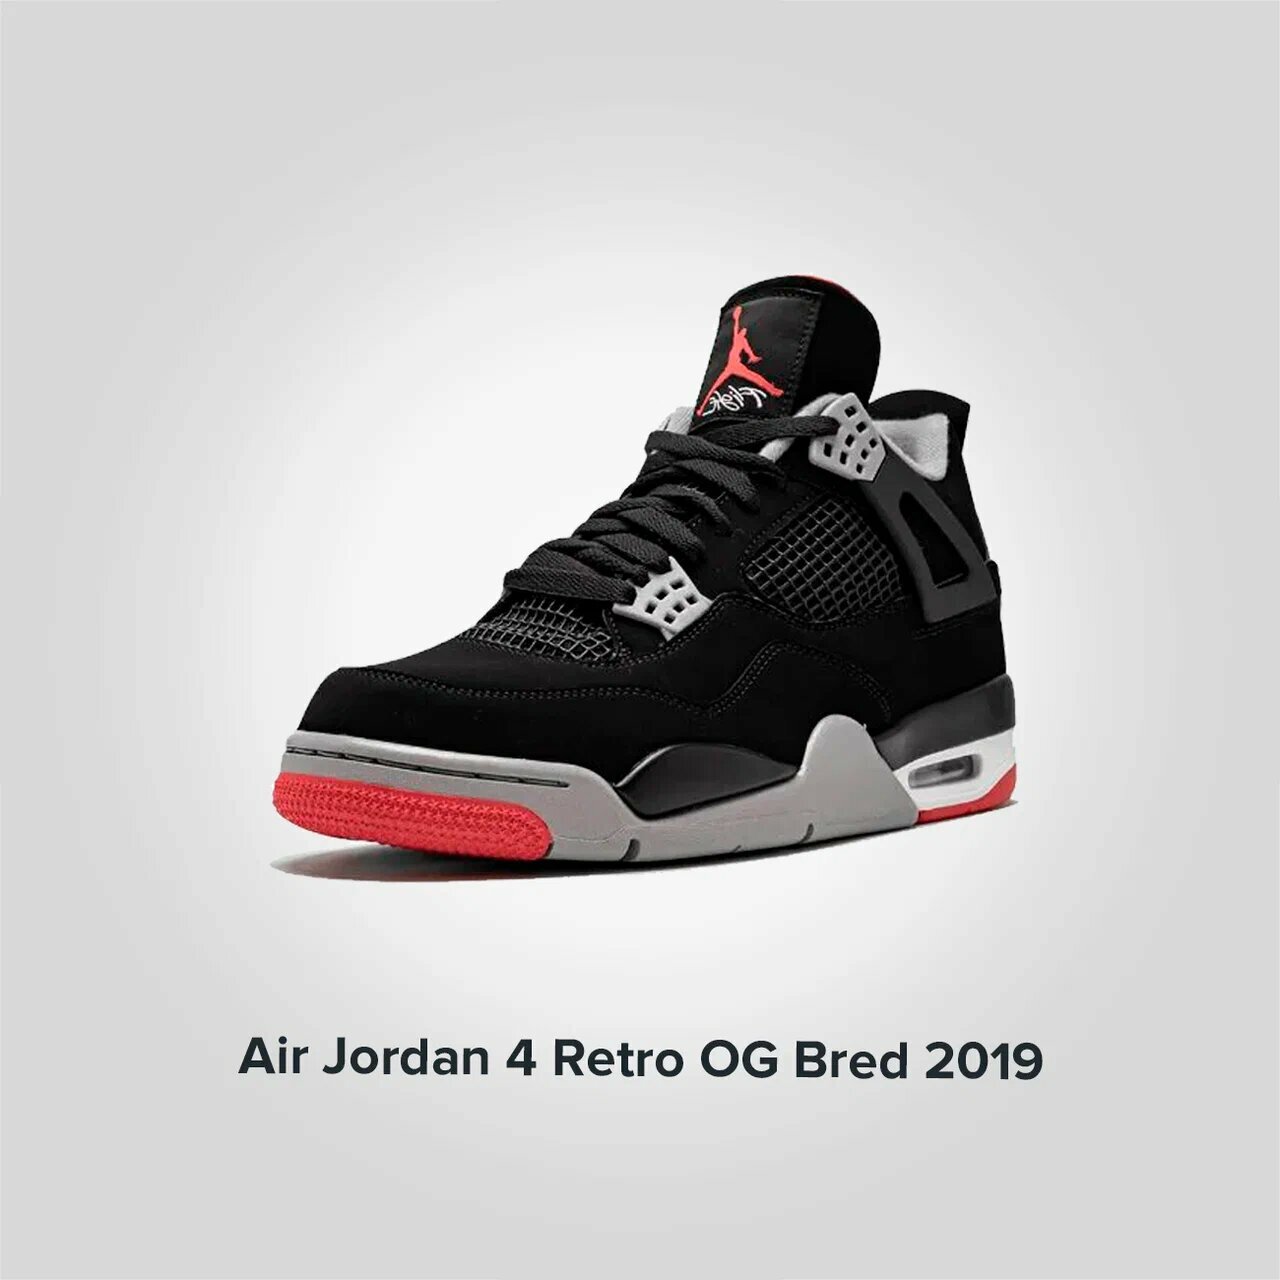 Jordan 4 Retro OG Bred 2019